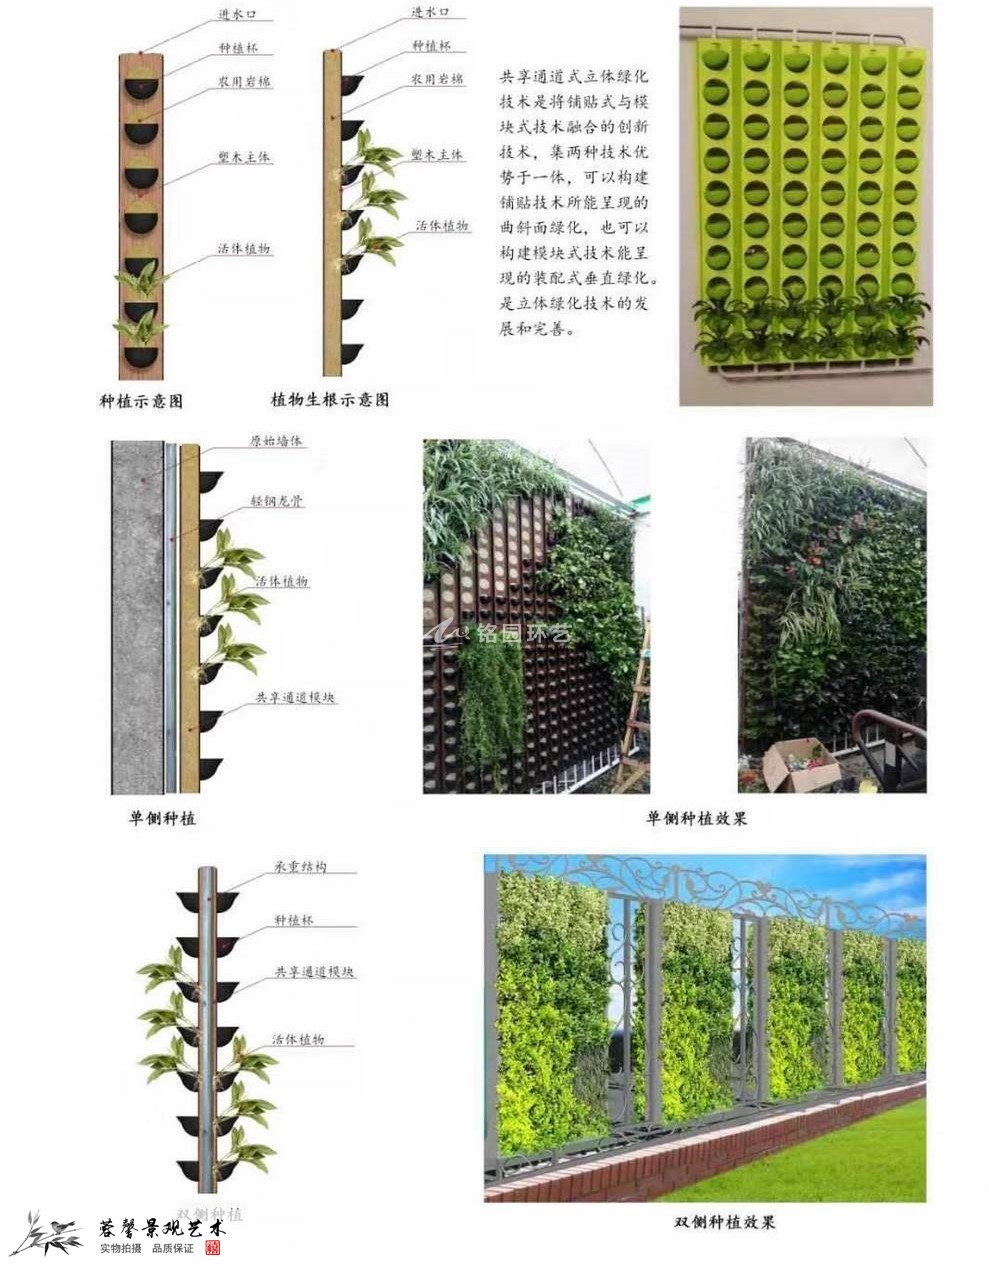 塑木通道式+岩棉植物墙容器介绍1_1.jpg